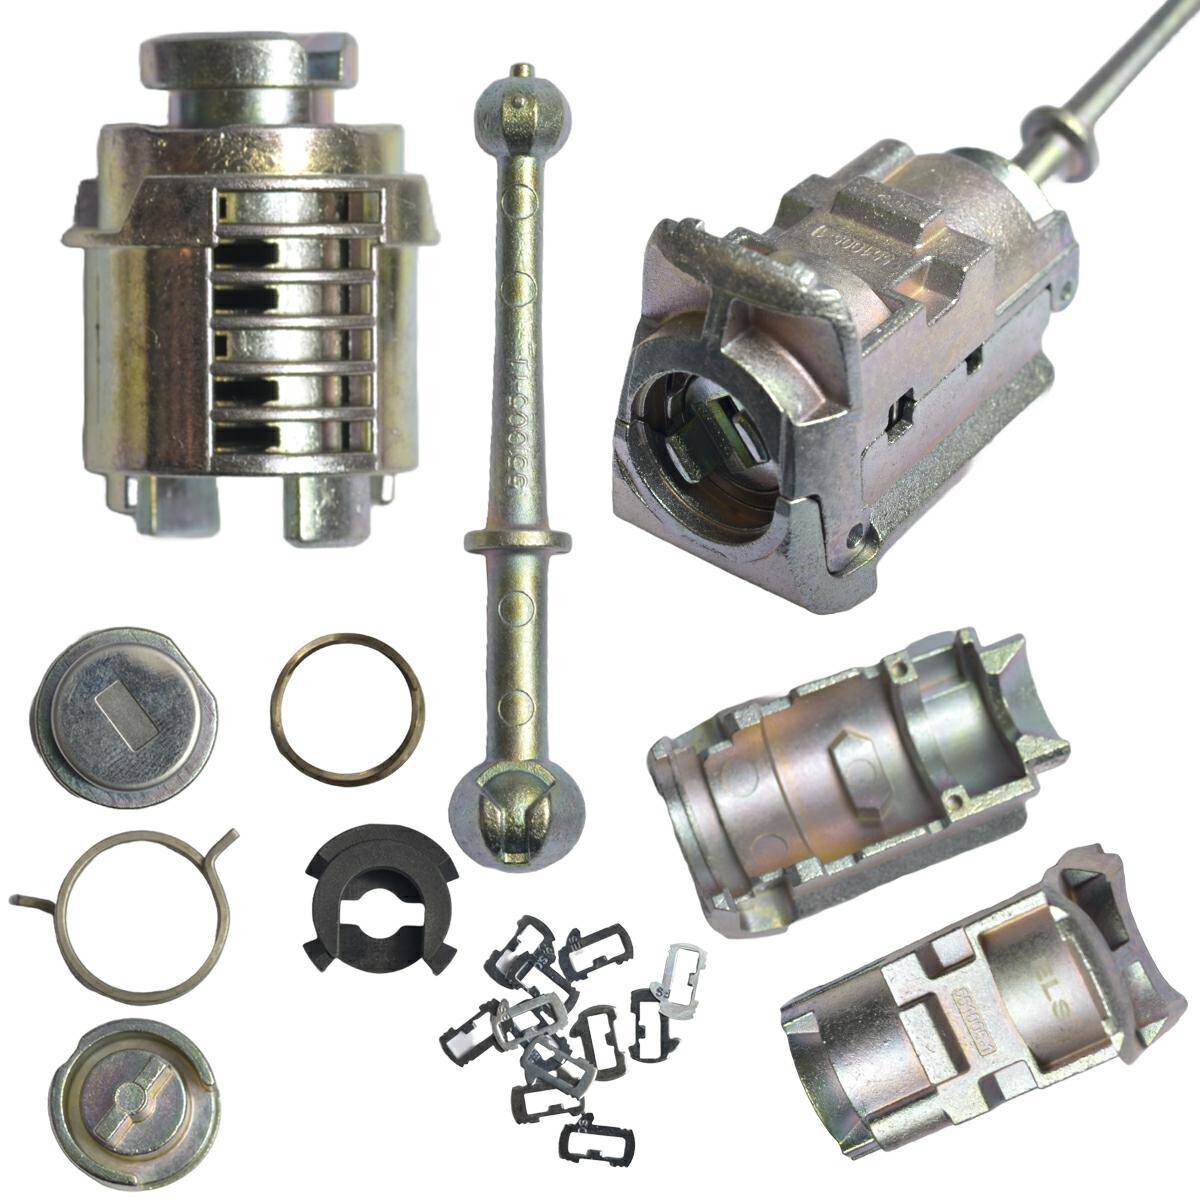 Lock repair kit - Citroen Berlingo B9